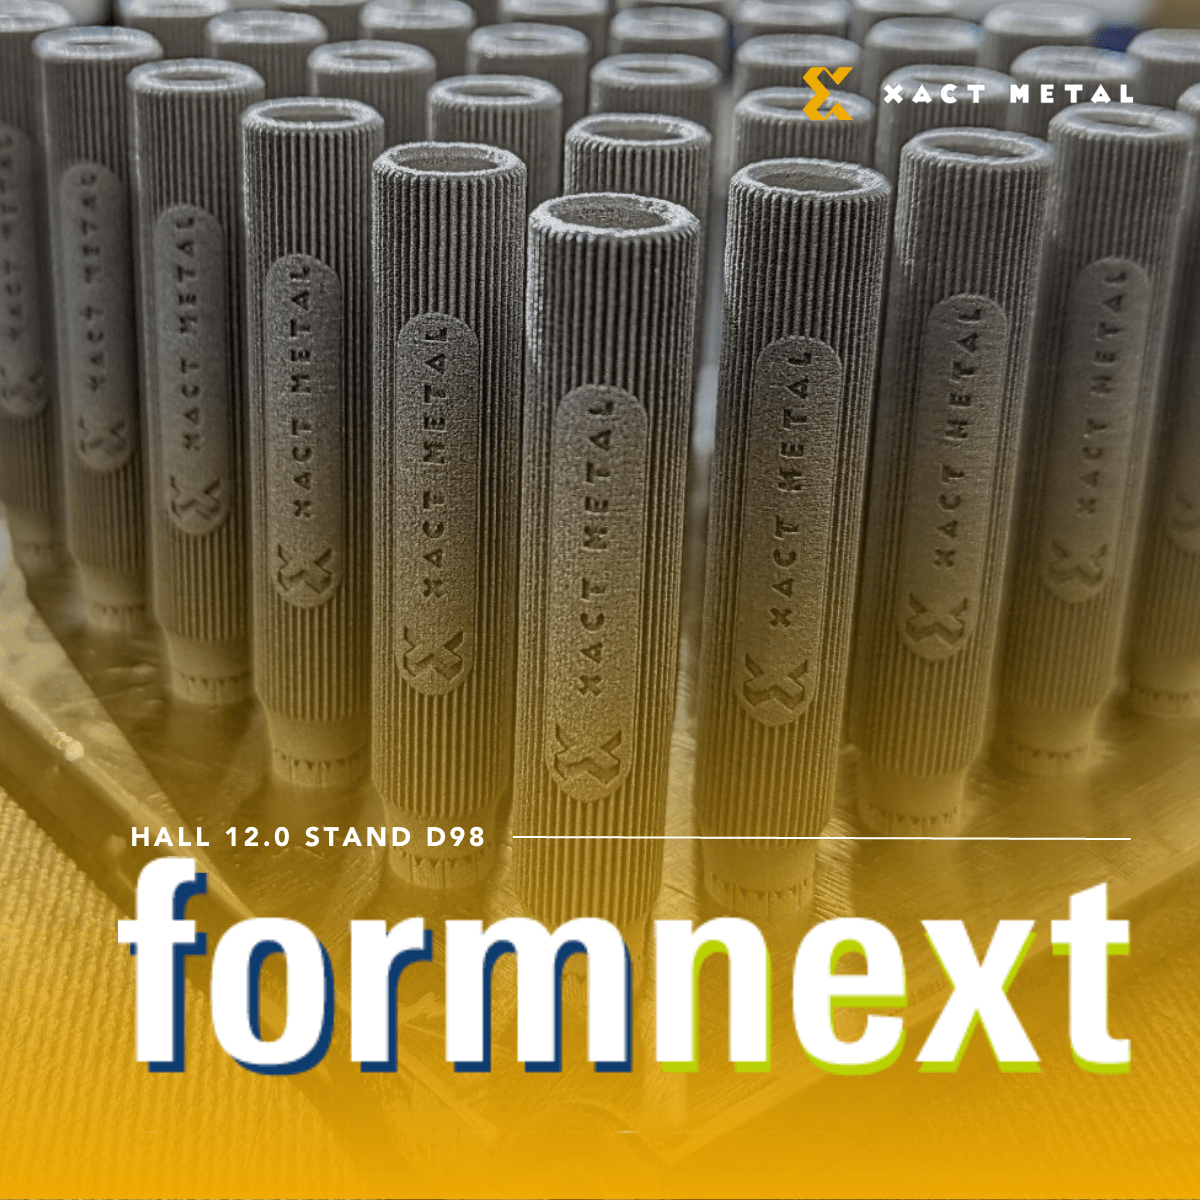 Visit Xact Metal at Formnext 2023